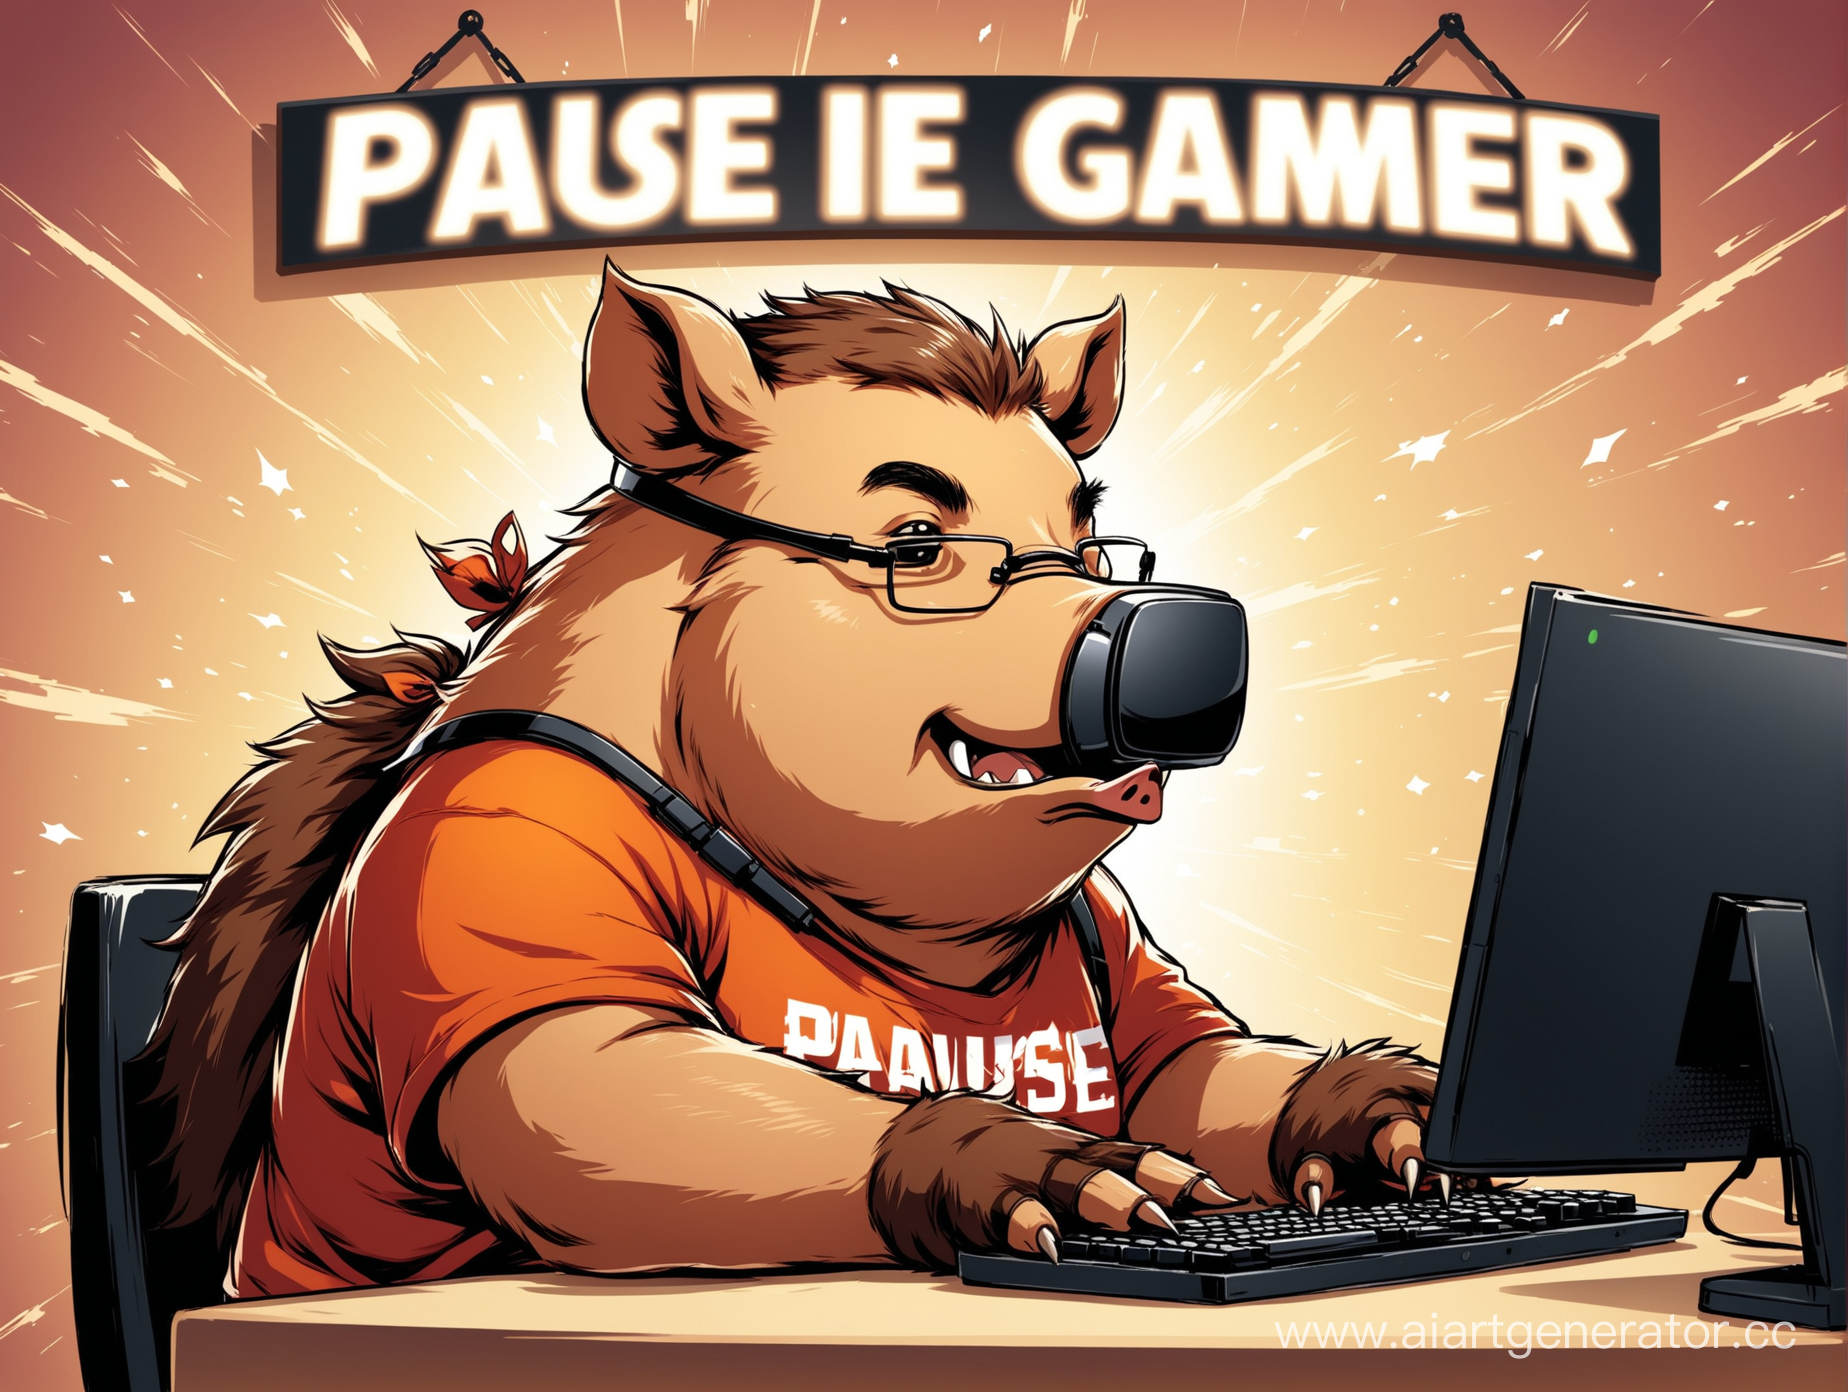 кабан геймер, он играет в компьютерные игры , на фоне вывеска с надписью "pause" 